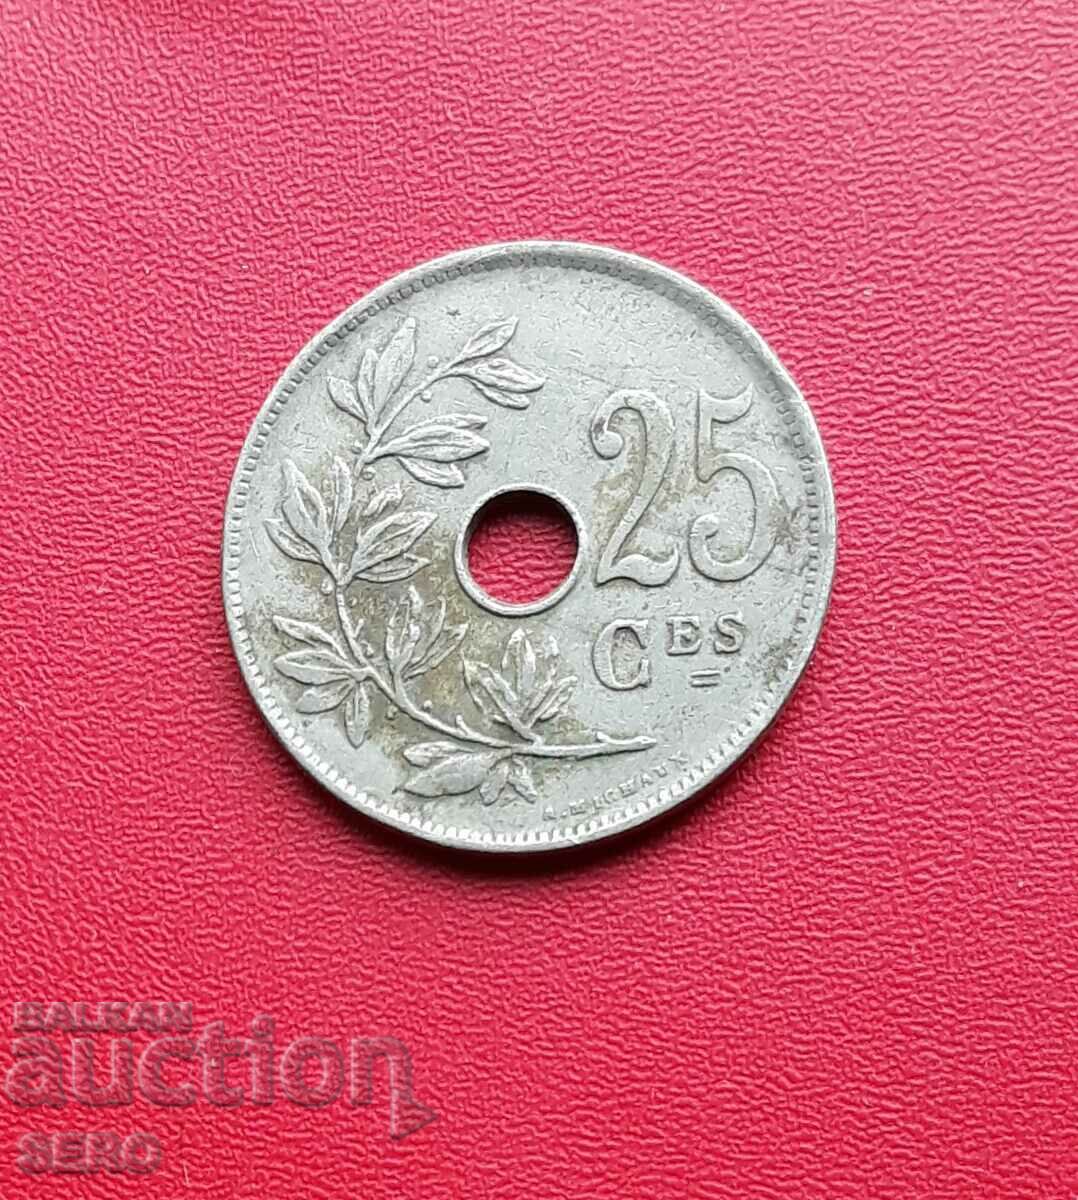 Belgium-25 cents 1929